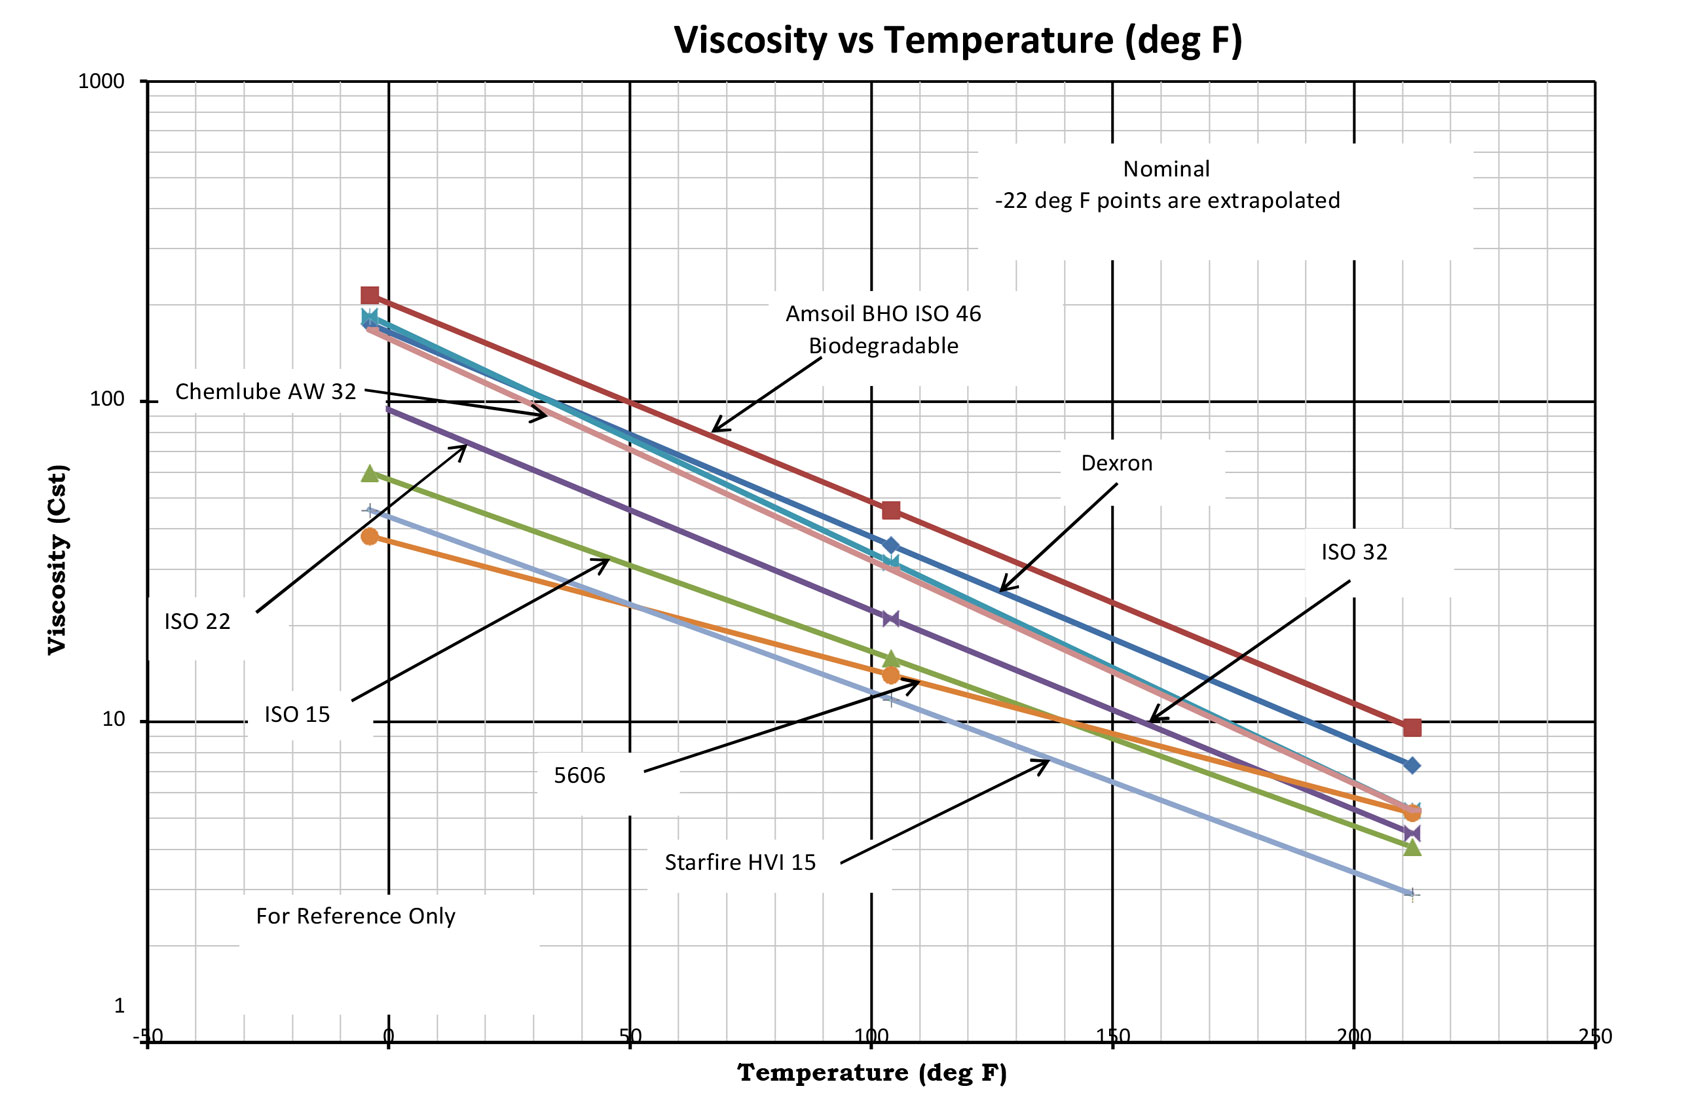 Oil Viscosity vs Temperature (deg F)